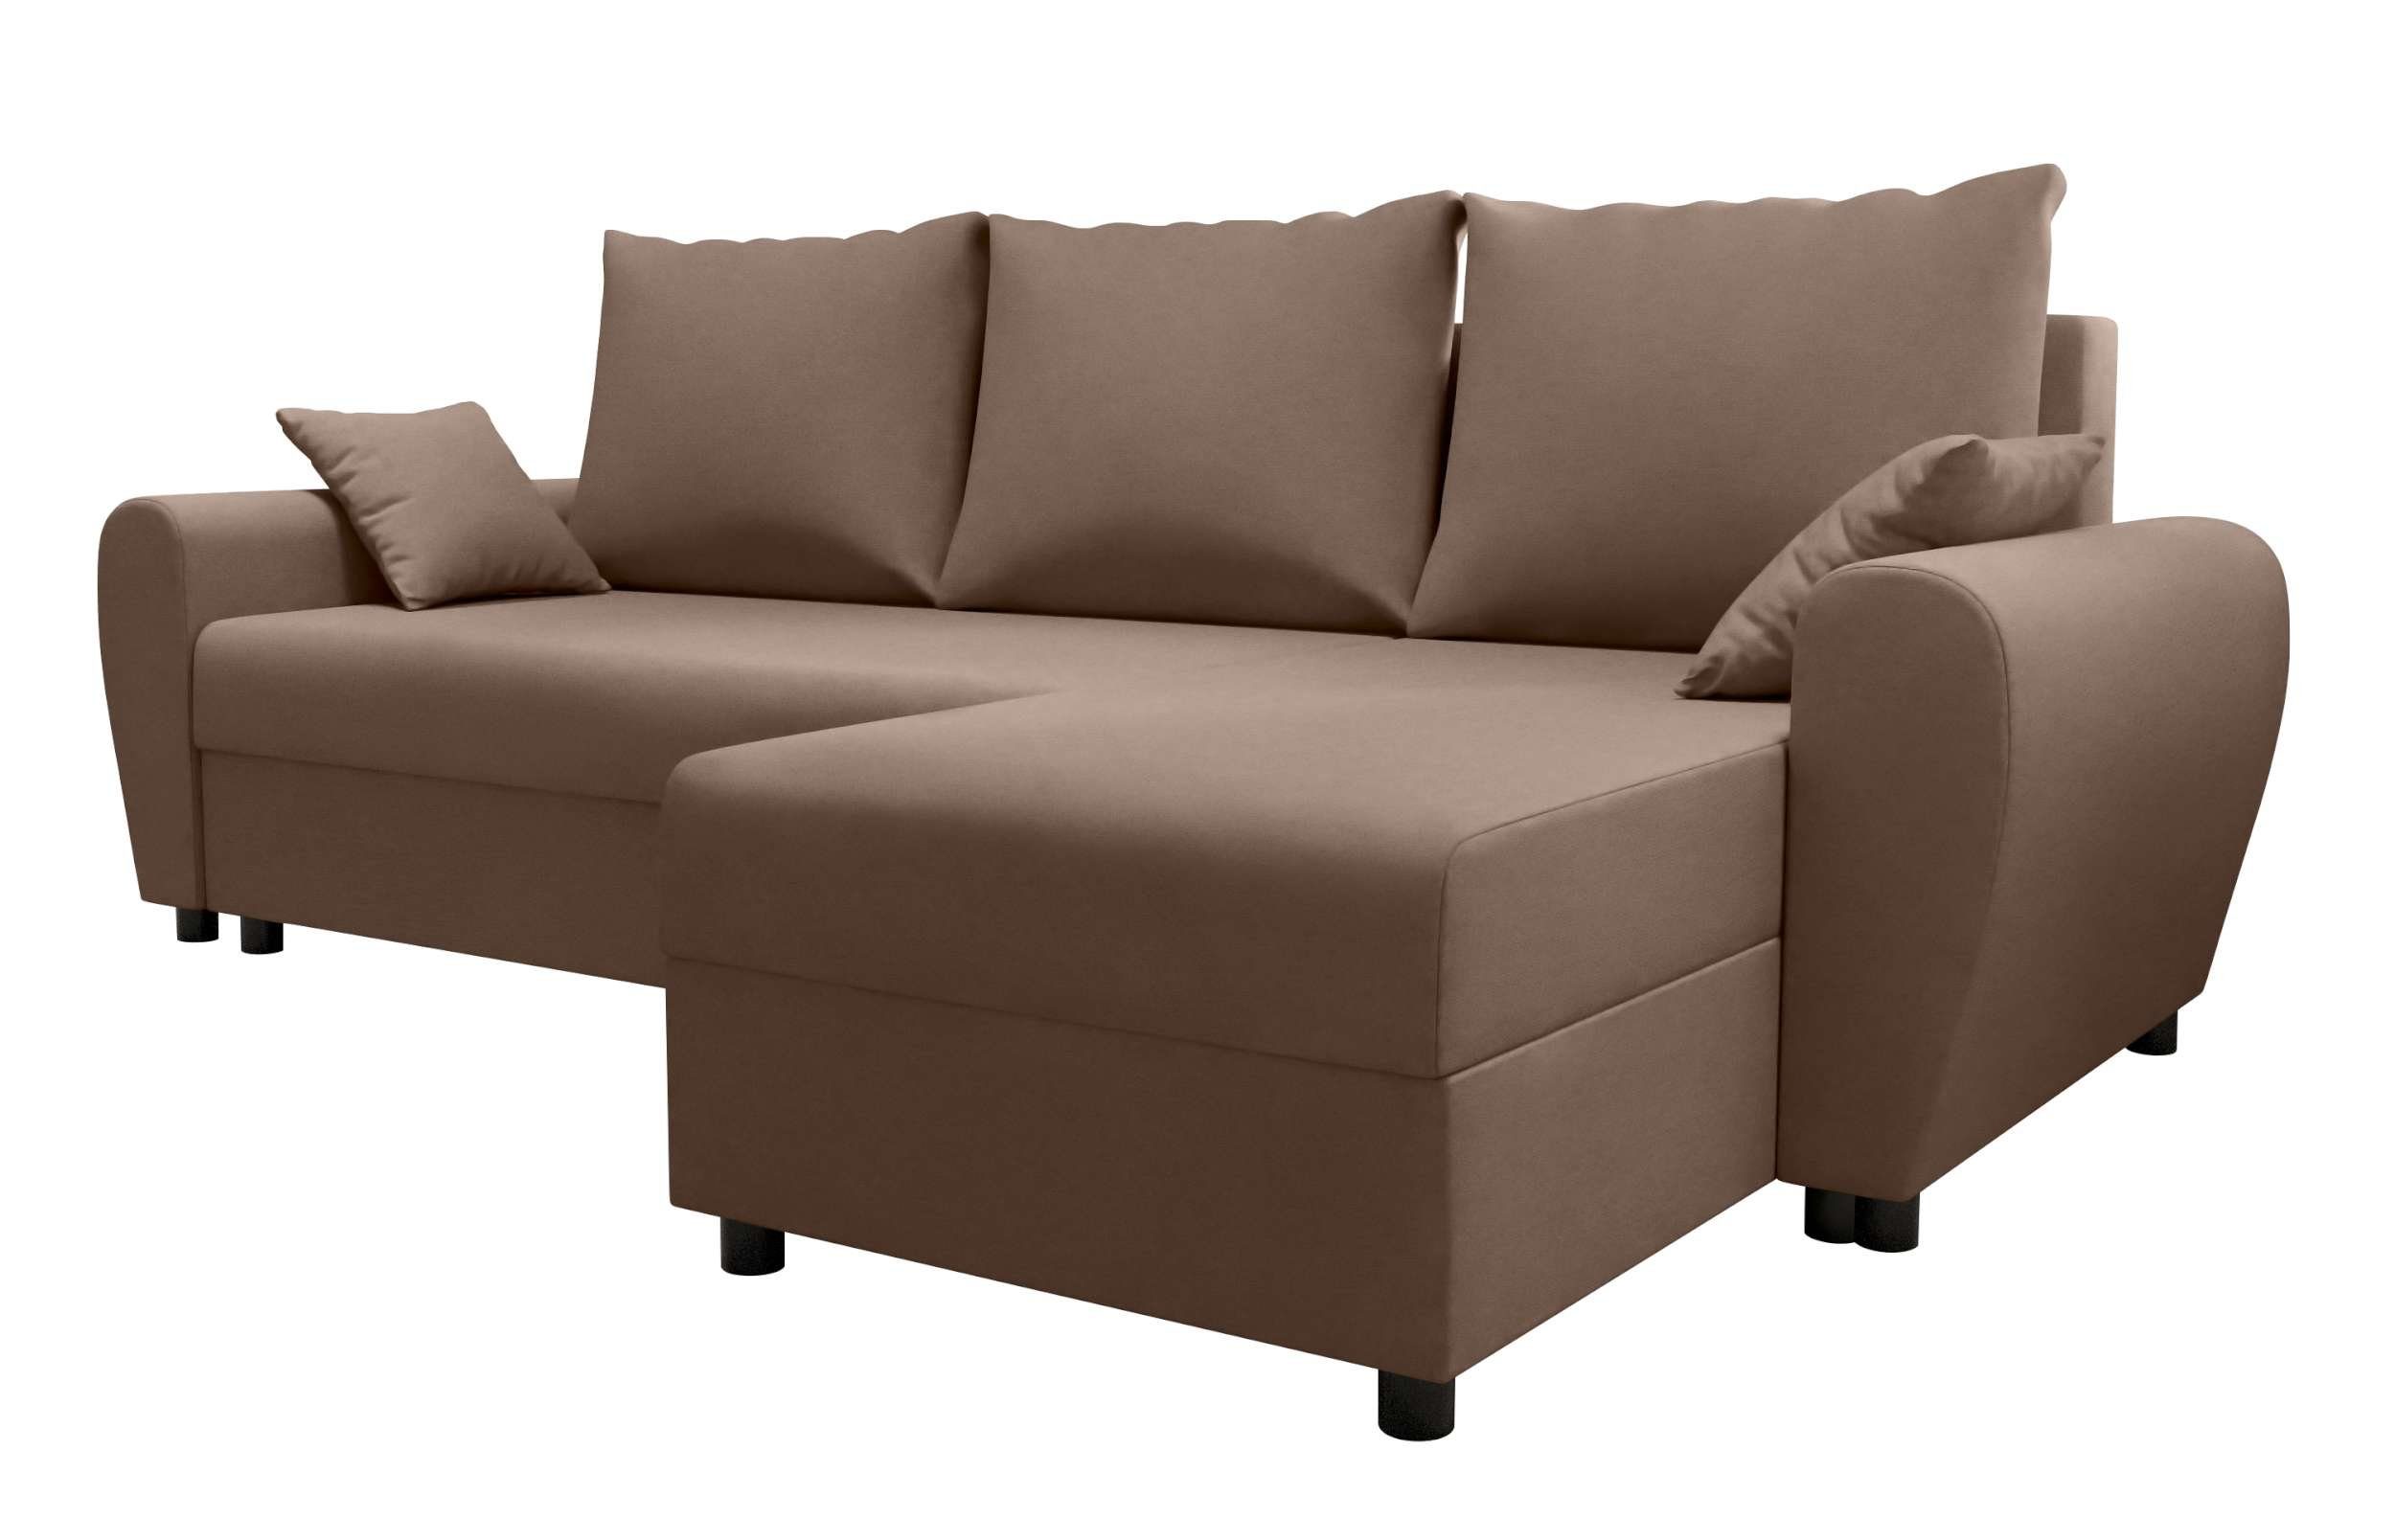 Stylefy Ecksofa Melina, Modern Design mit L-Form, Sitzkomfort, mit Sofa, Eckcouch, Bettkasten, Bettfunktion